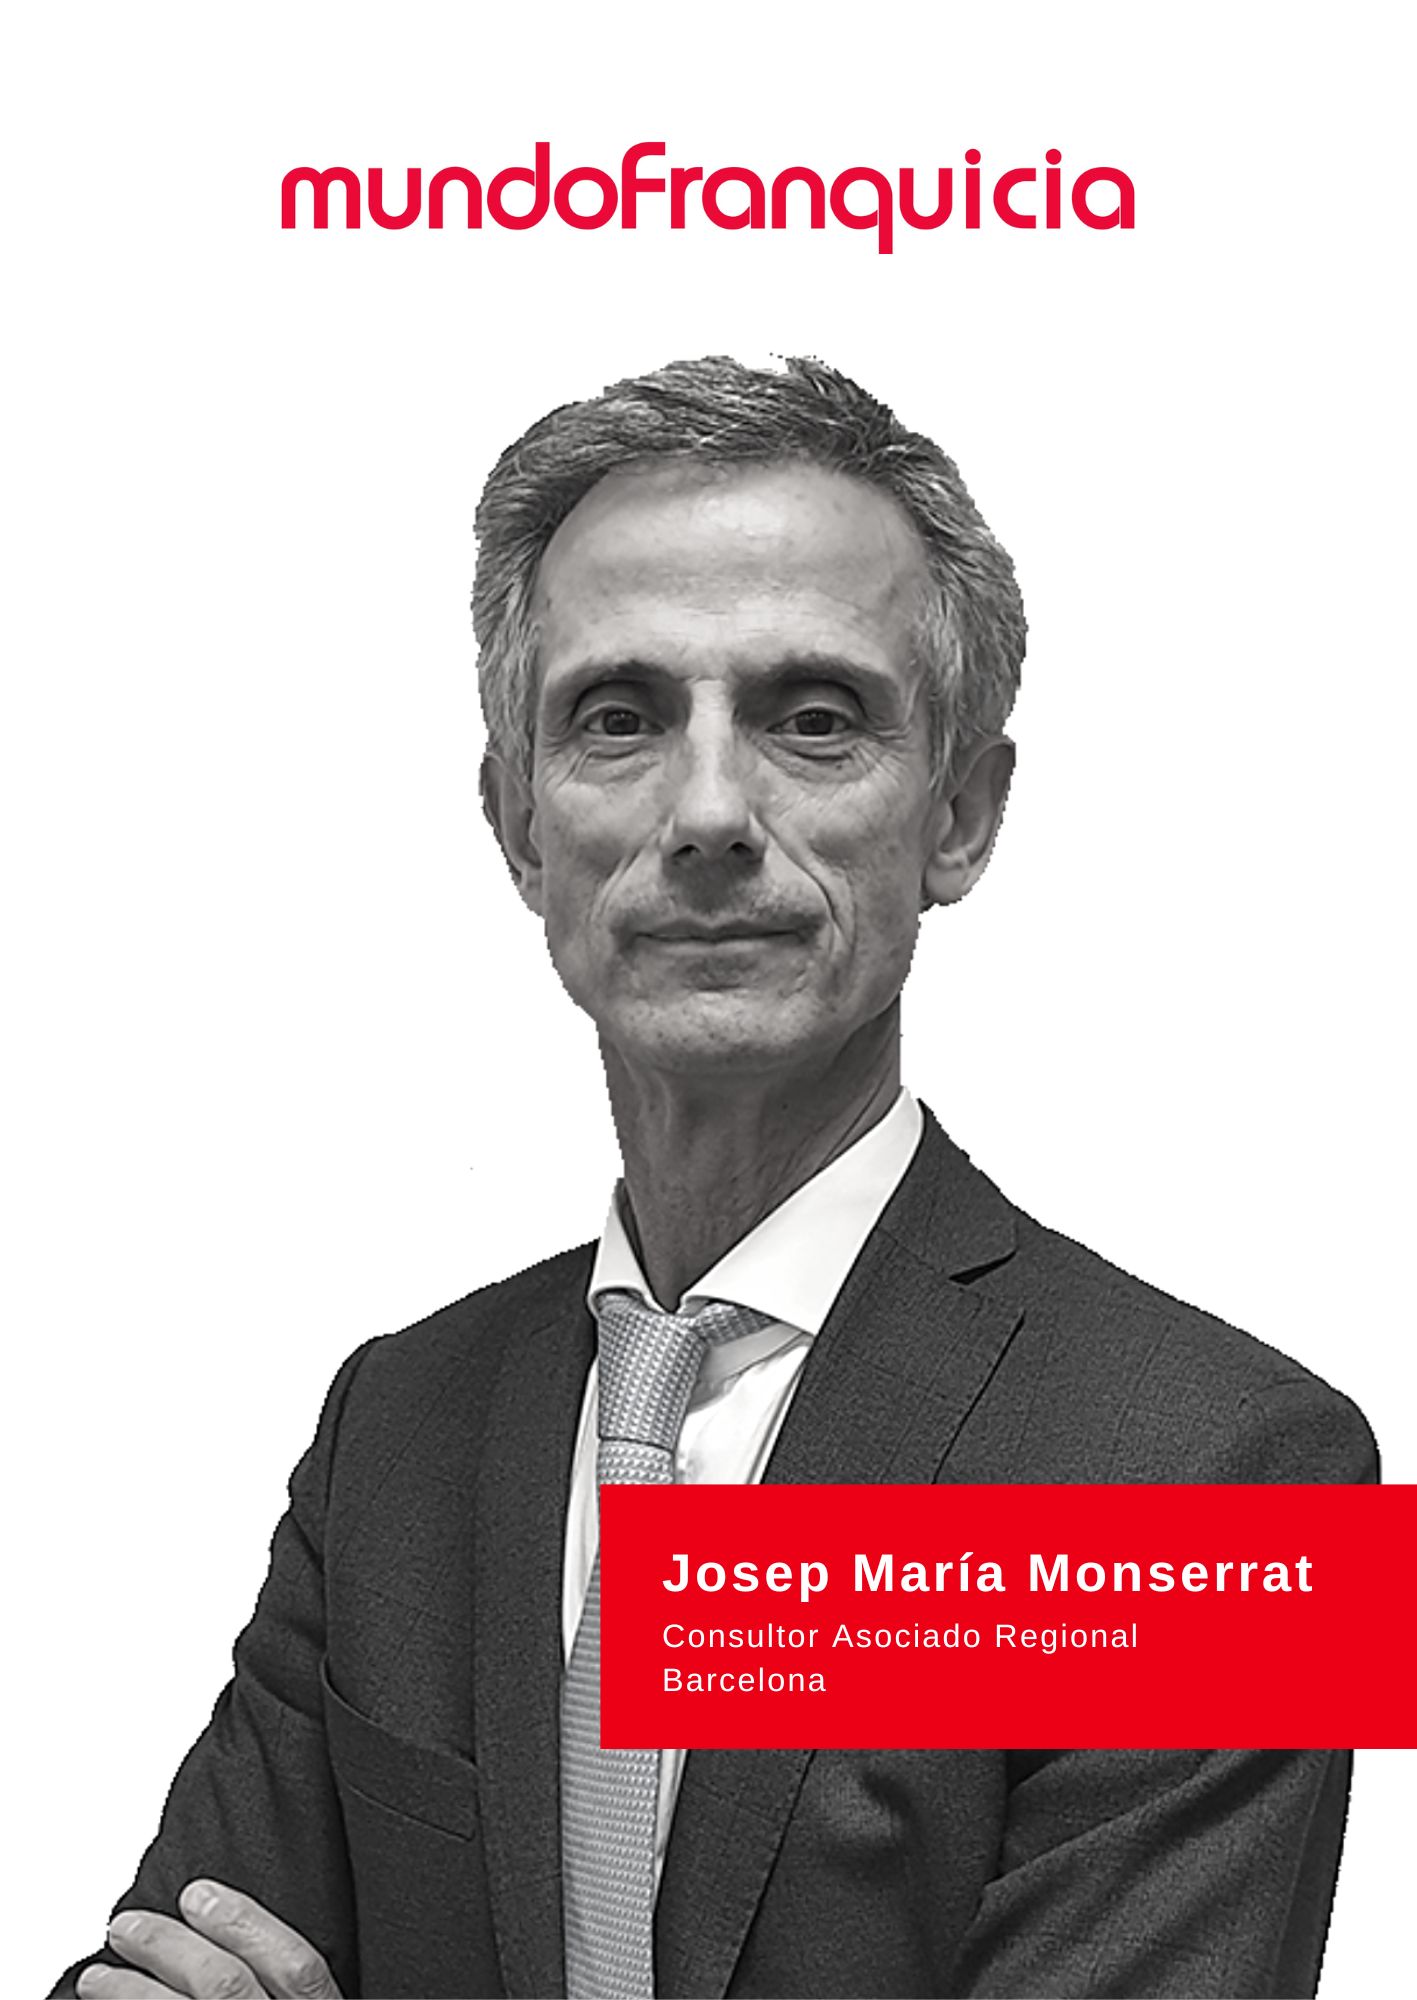 Josep María Monserrat